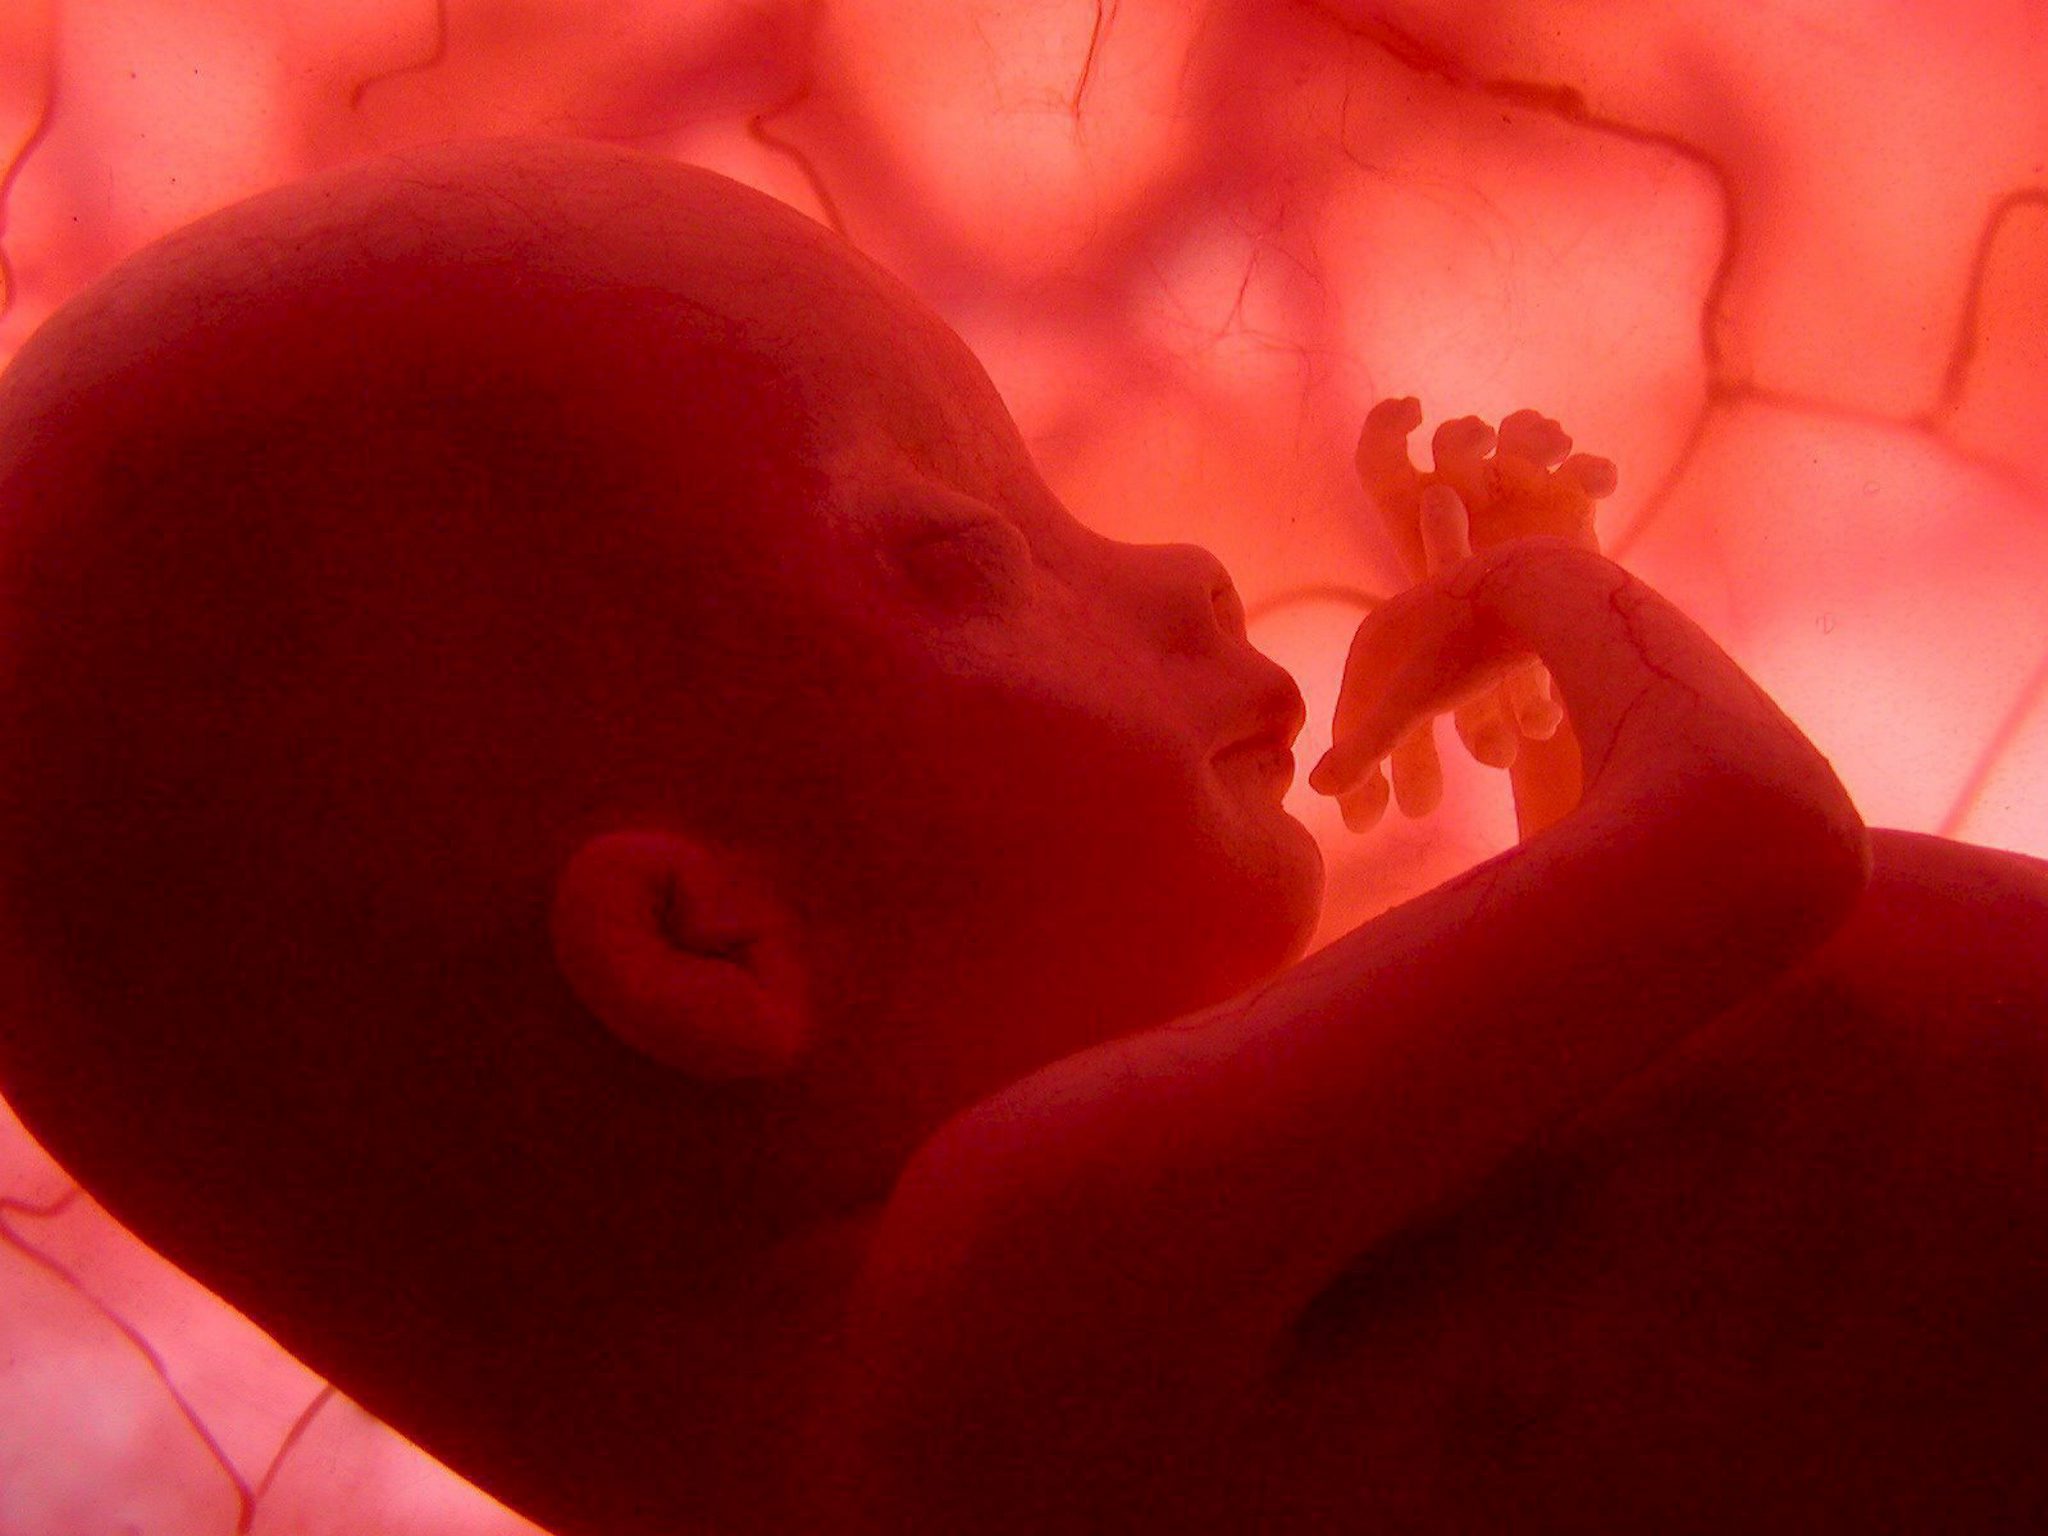 Προγεννητική ανάγνωση του DNA του εμβρύου πέτυχαν Αμερικανοί επιστήμονες